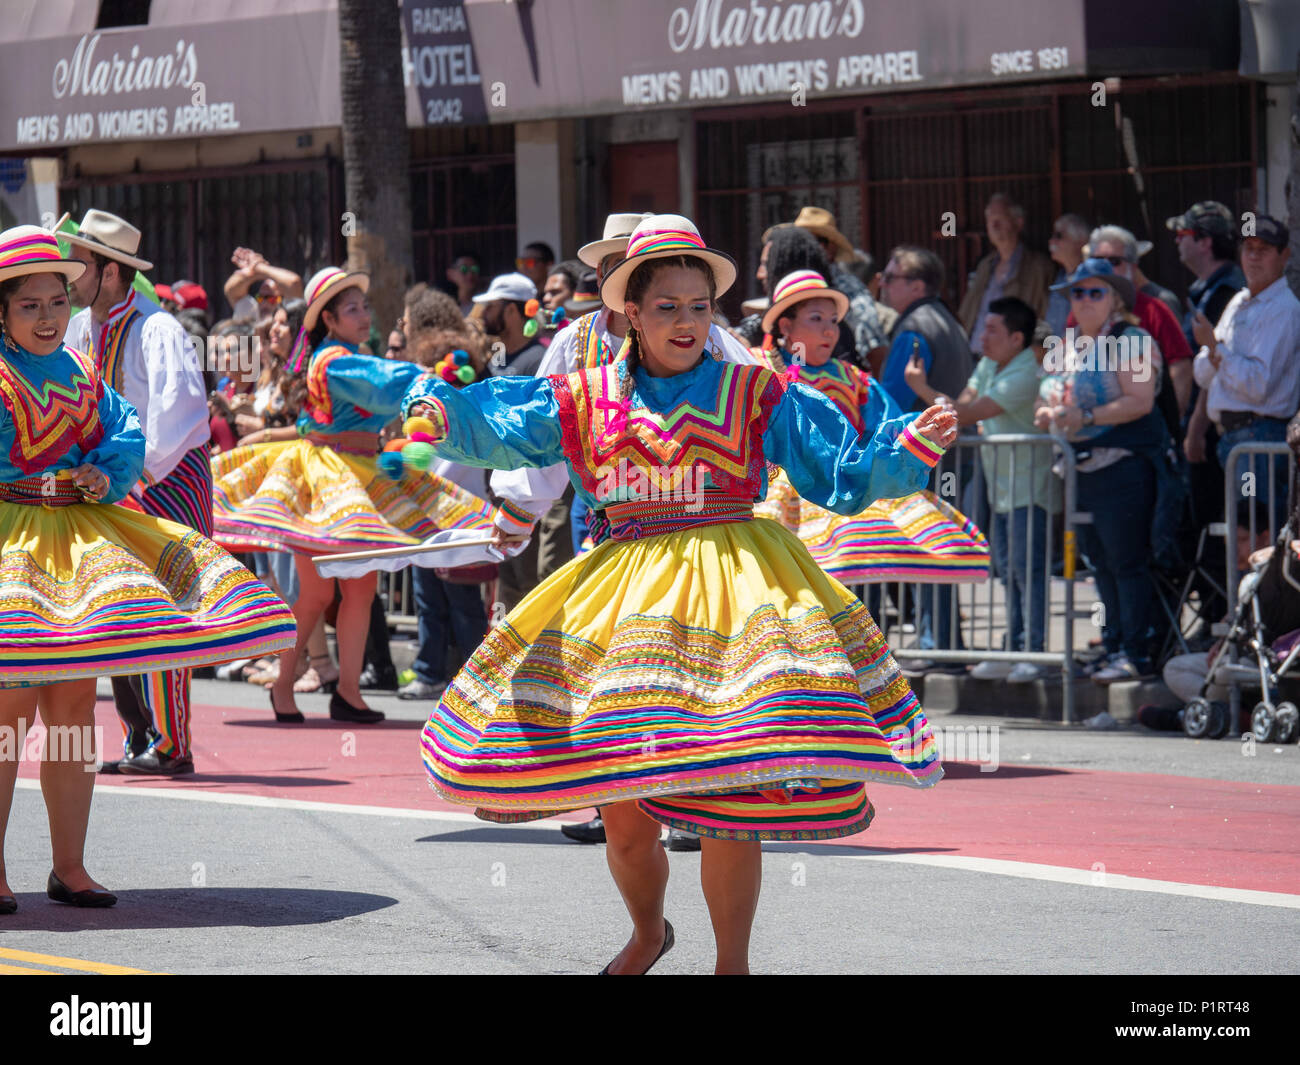 FRANCISCO, CA - May 27, 2018: Las mostrando spin movimientos de baile vestidos de fiesta vestidos mexicanos marchando hacia abajo el Caranval desfile Fotografía de stock - Alamy